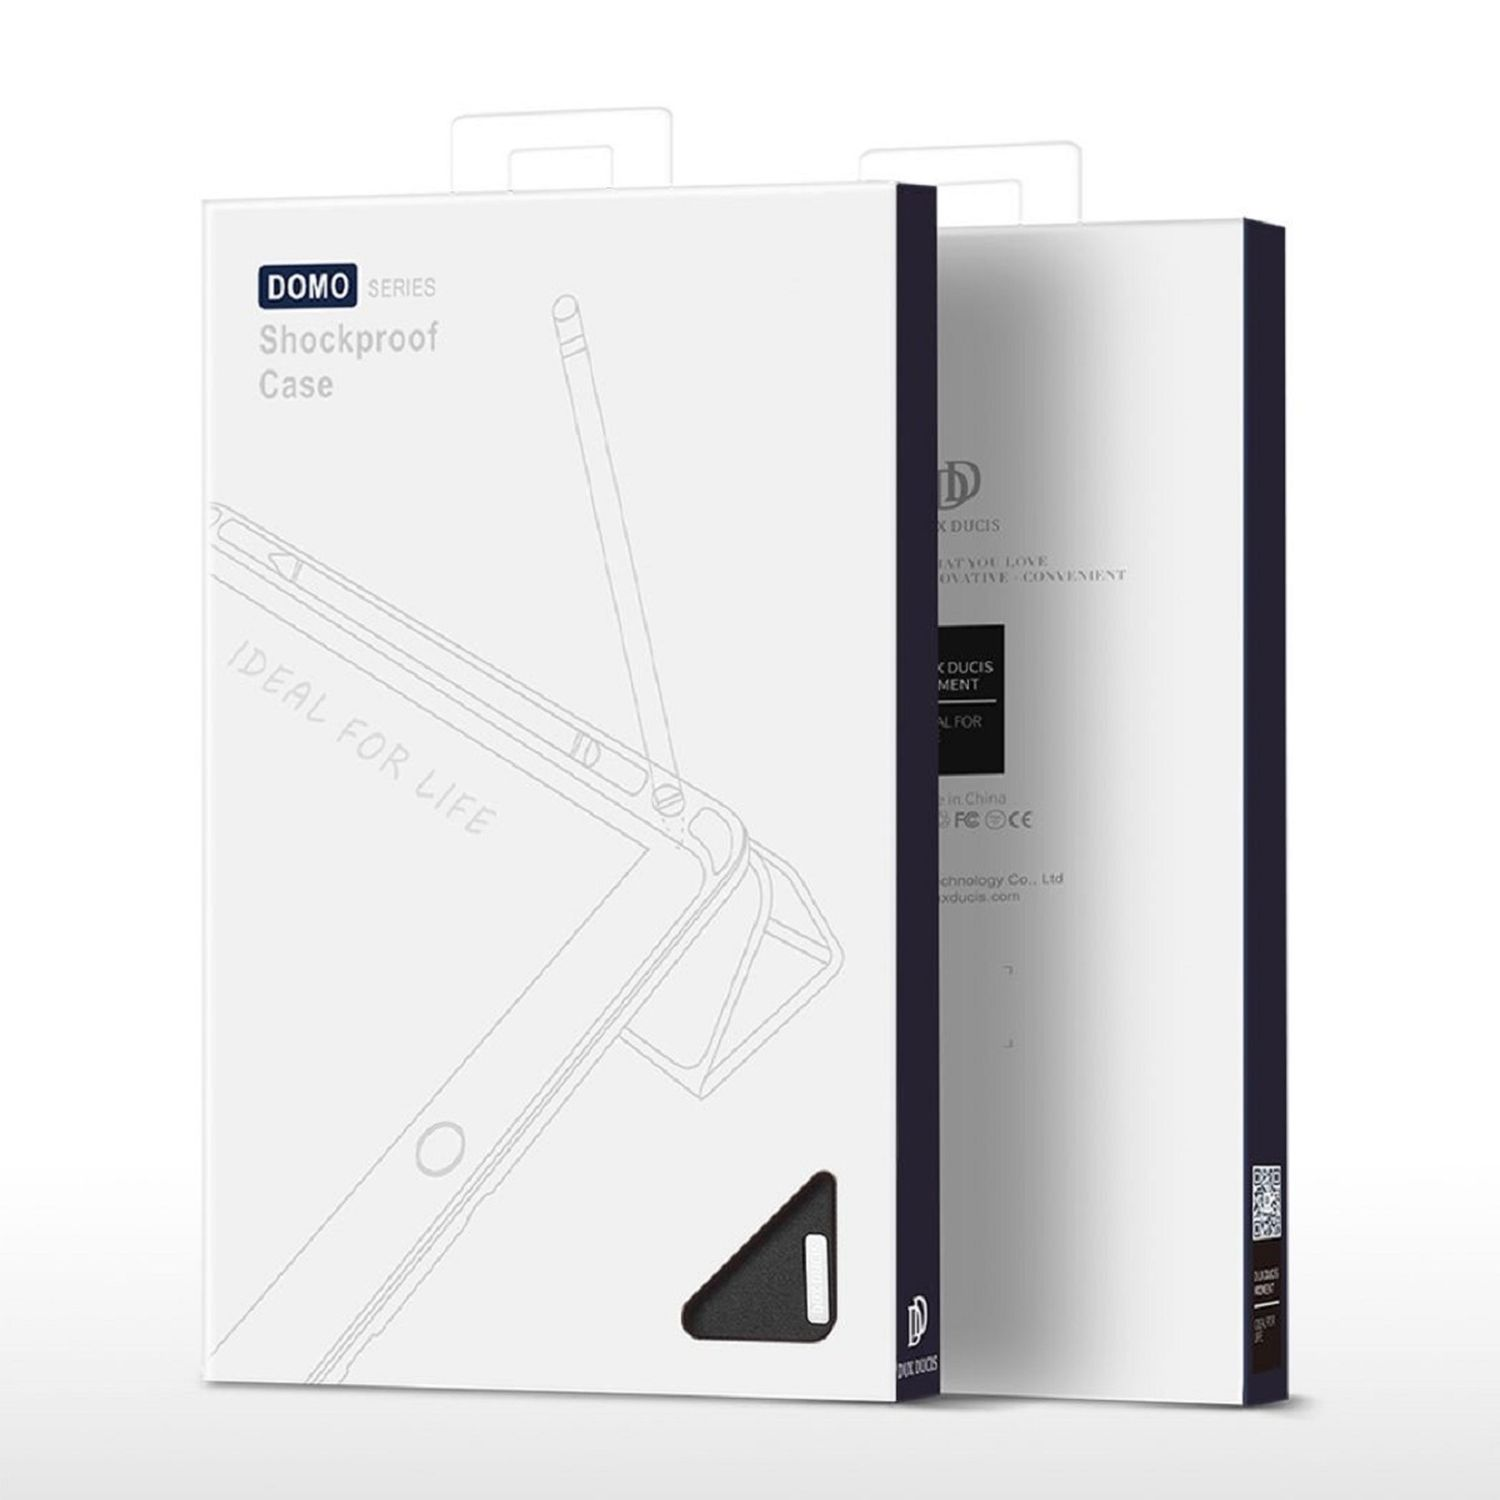 Samsung DUX für Bookcover Galaxy DUCIS Domo Samsung Tab Schwarz Kunstleder, S9 Tablethülle